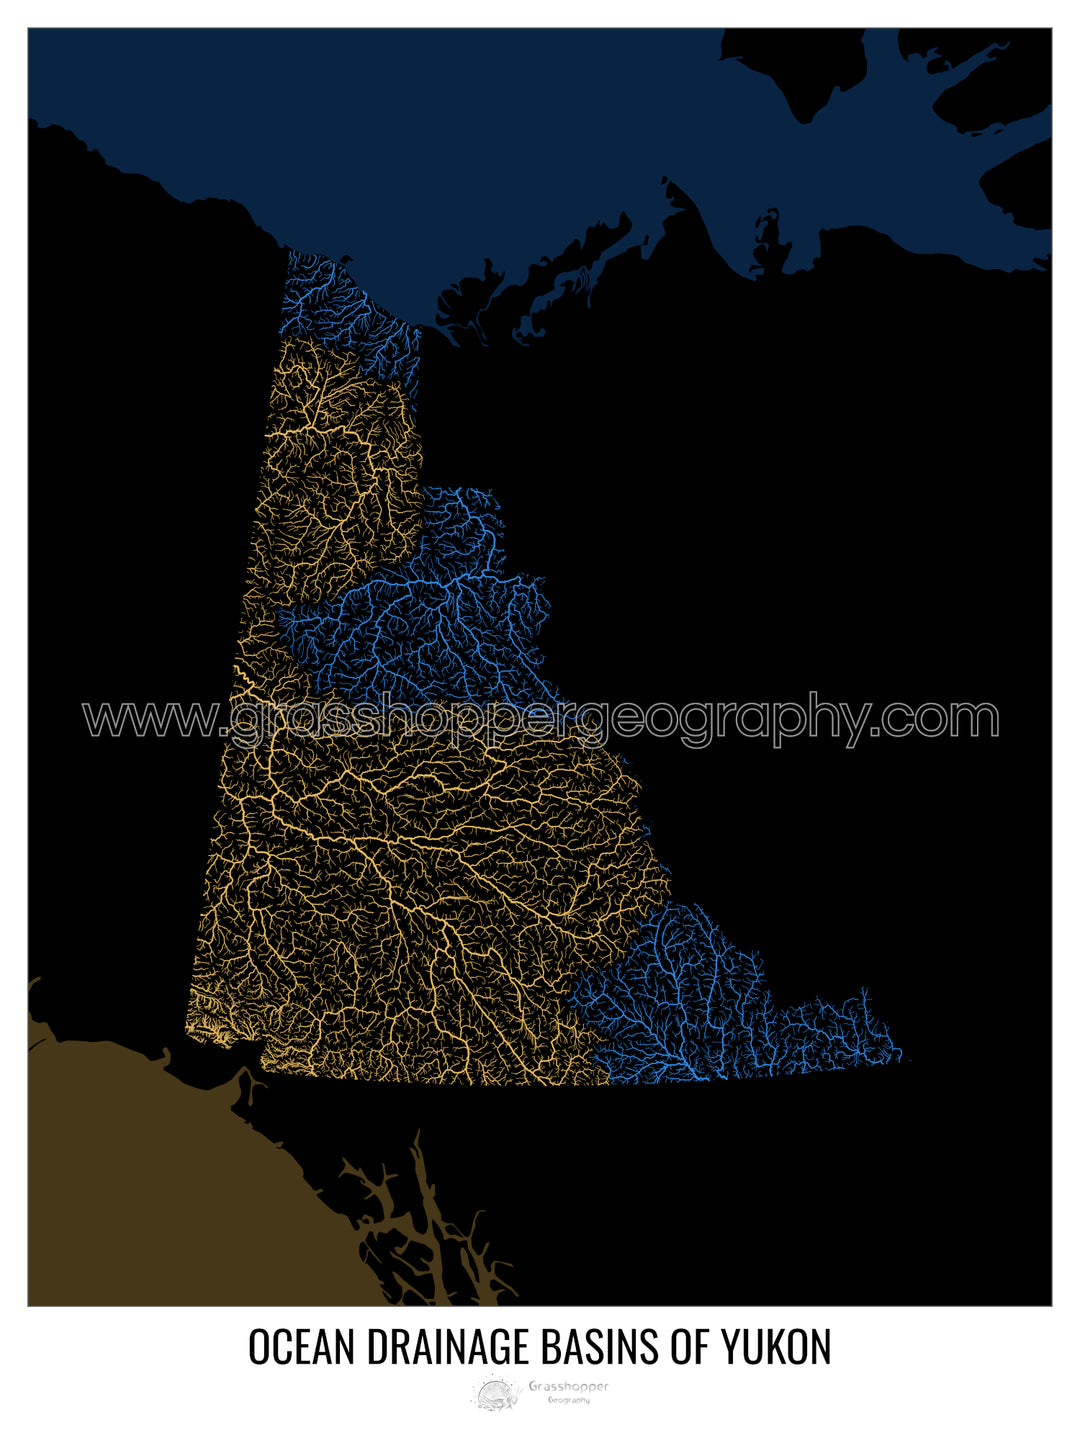 Yukon - Mapa de la cuenca de drenaje oceánico, negro v2 - Lámina enmarcada